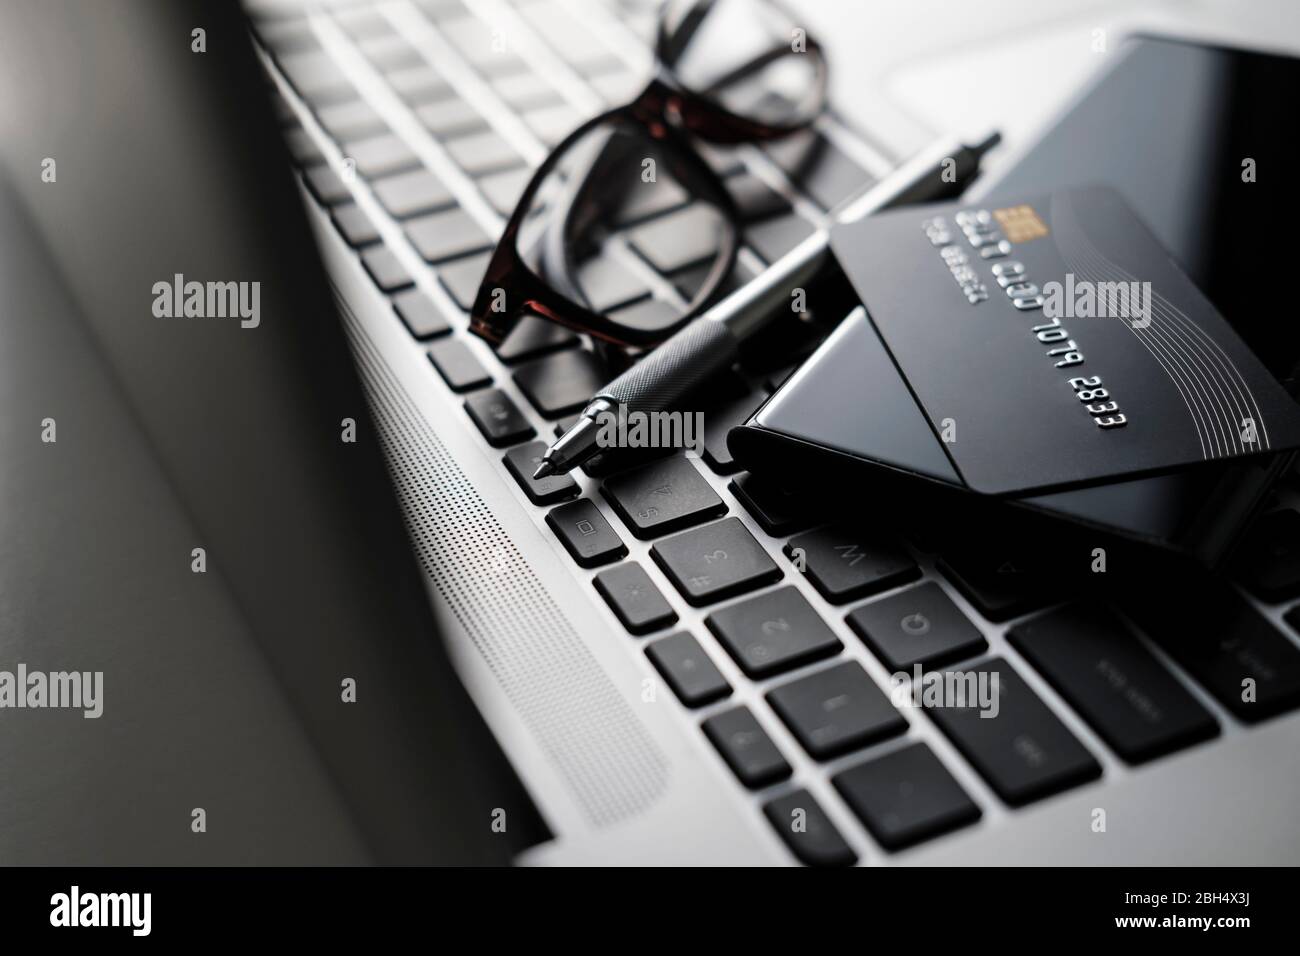 Kreditkarte, Smartphone, Stift und Brille auf Laptop-Tastatur Stockfoto